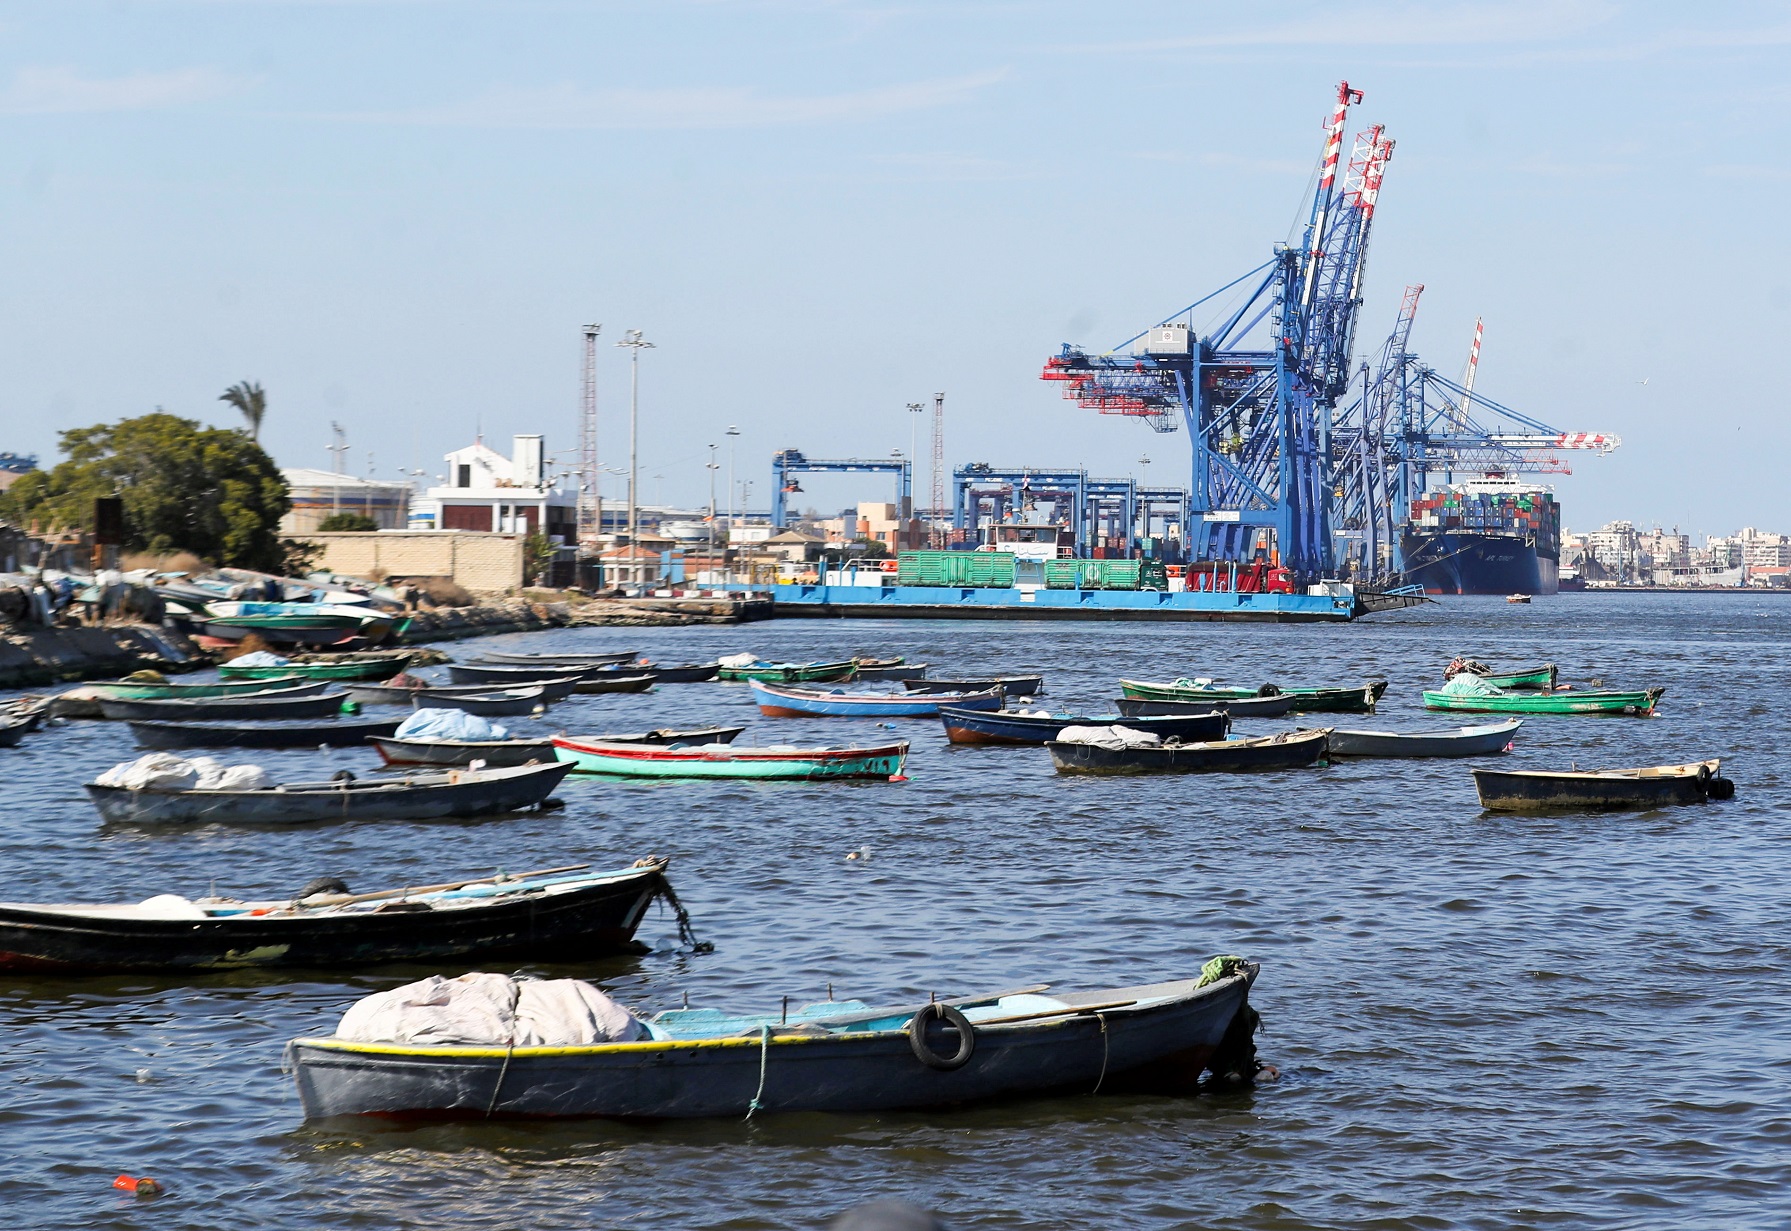 قوارب بجوار رافعات في قناة السويس بالقرب من مدينة الإسماعيلية الساحلية شمال شرق القاهرة، مصر، 5/3/2021. (رويترز / محمد عبد الغني )